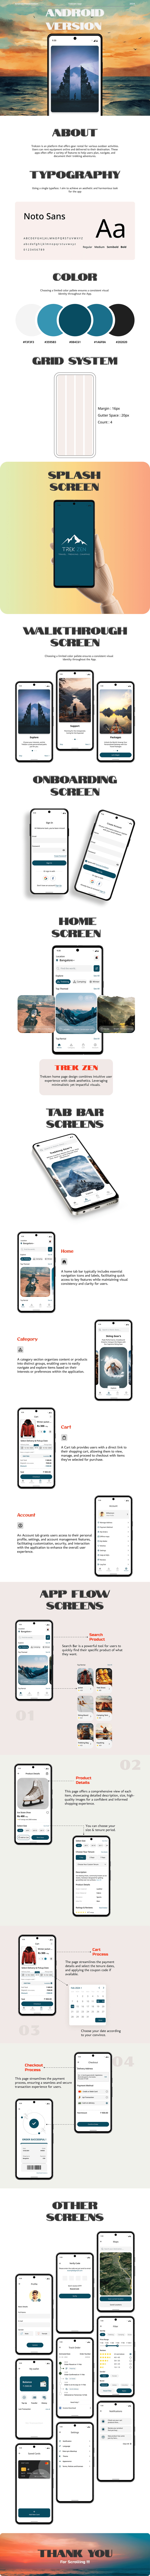 UI/UX Figma android uidesign Travel trekking rental adventure Mobile app design